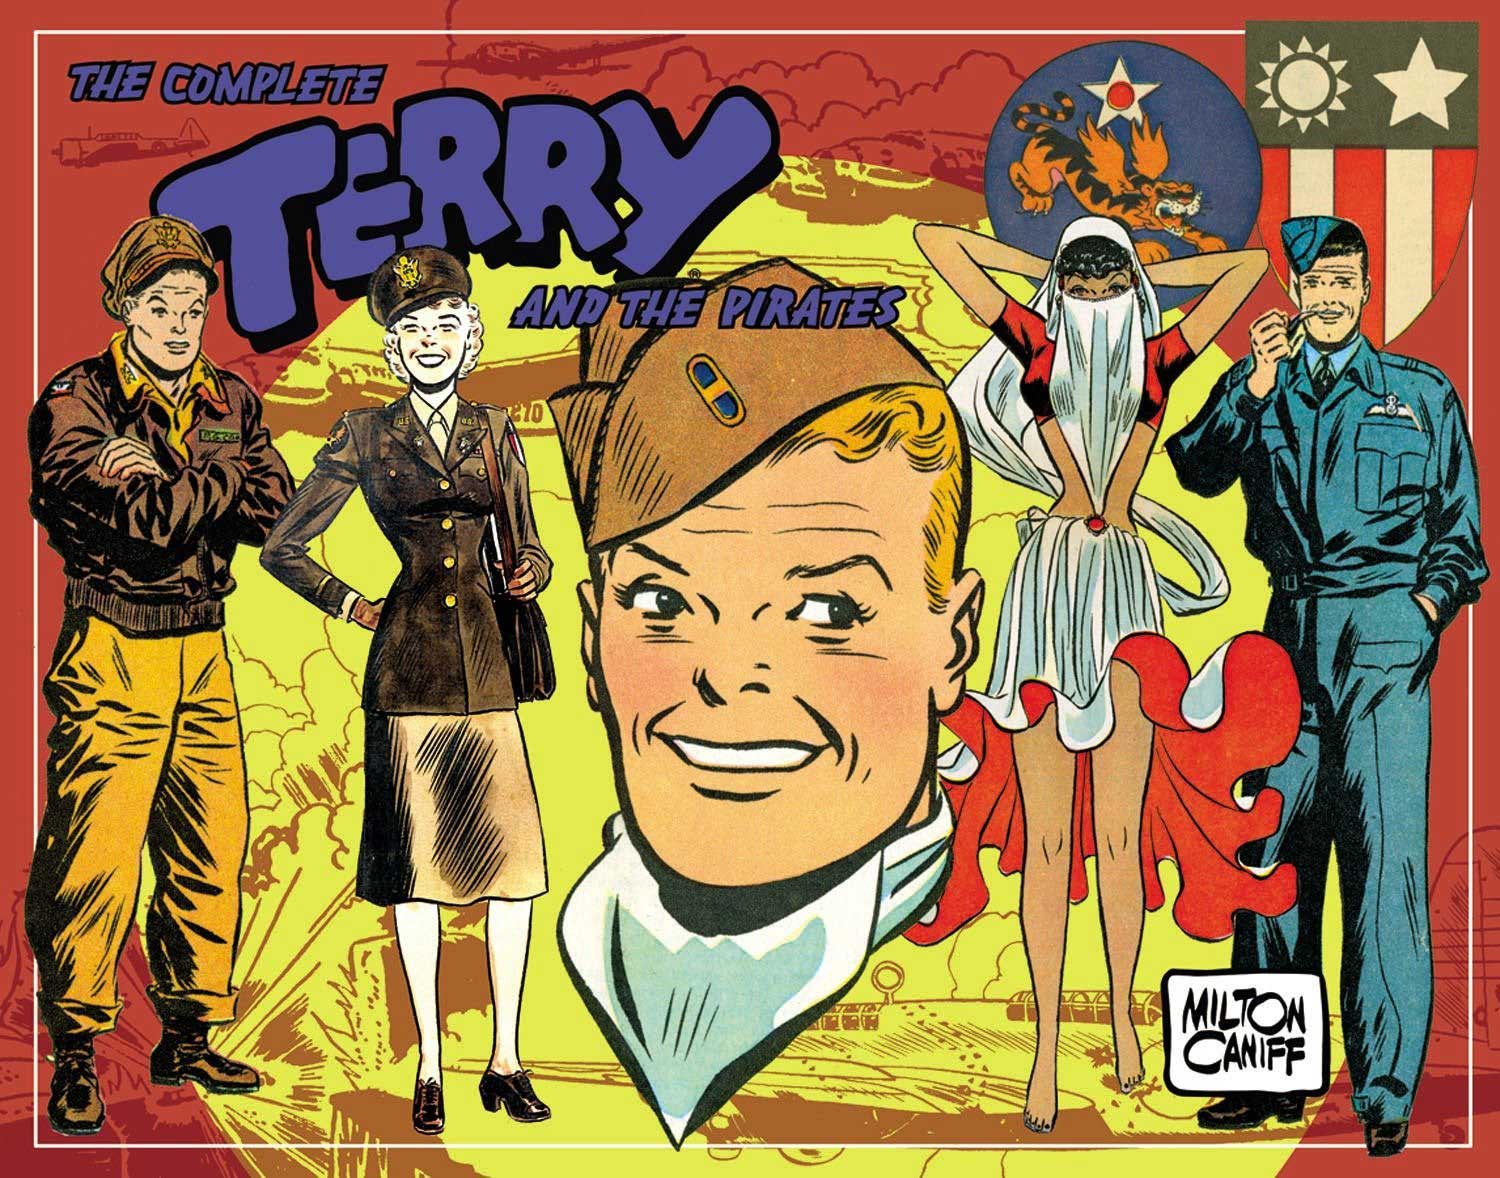 Libri Terry & I Pirati Vol 05 (1943-1944) NUOVO SIGILLATO, EDIZIONE DEL 18/02/2021 SUBITO DISPONIBILE